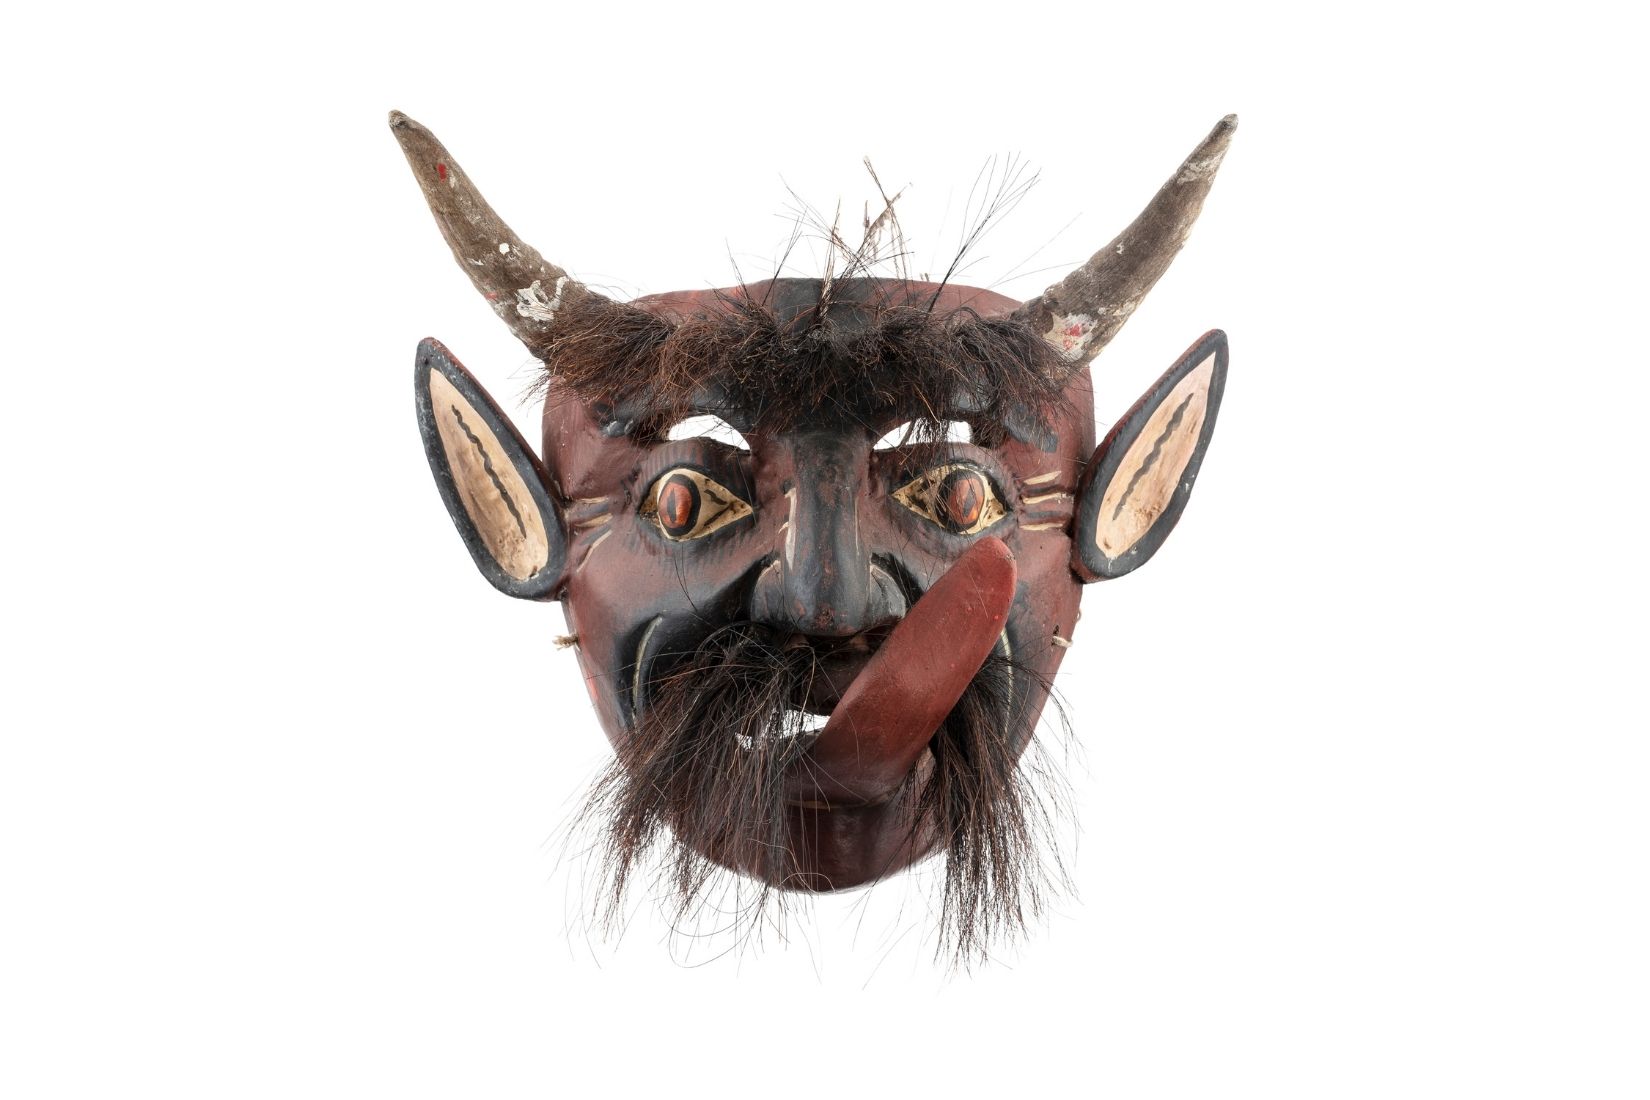 Máscara de diablo de madera tallada, cuernos y cuerdas de animal. Artesano desconocido. Metztitlán, Hgo. Col. Miguel Abruch. (Foto: GLR Estudio).